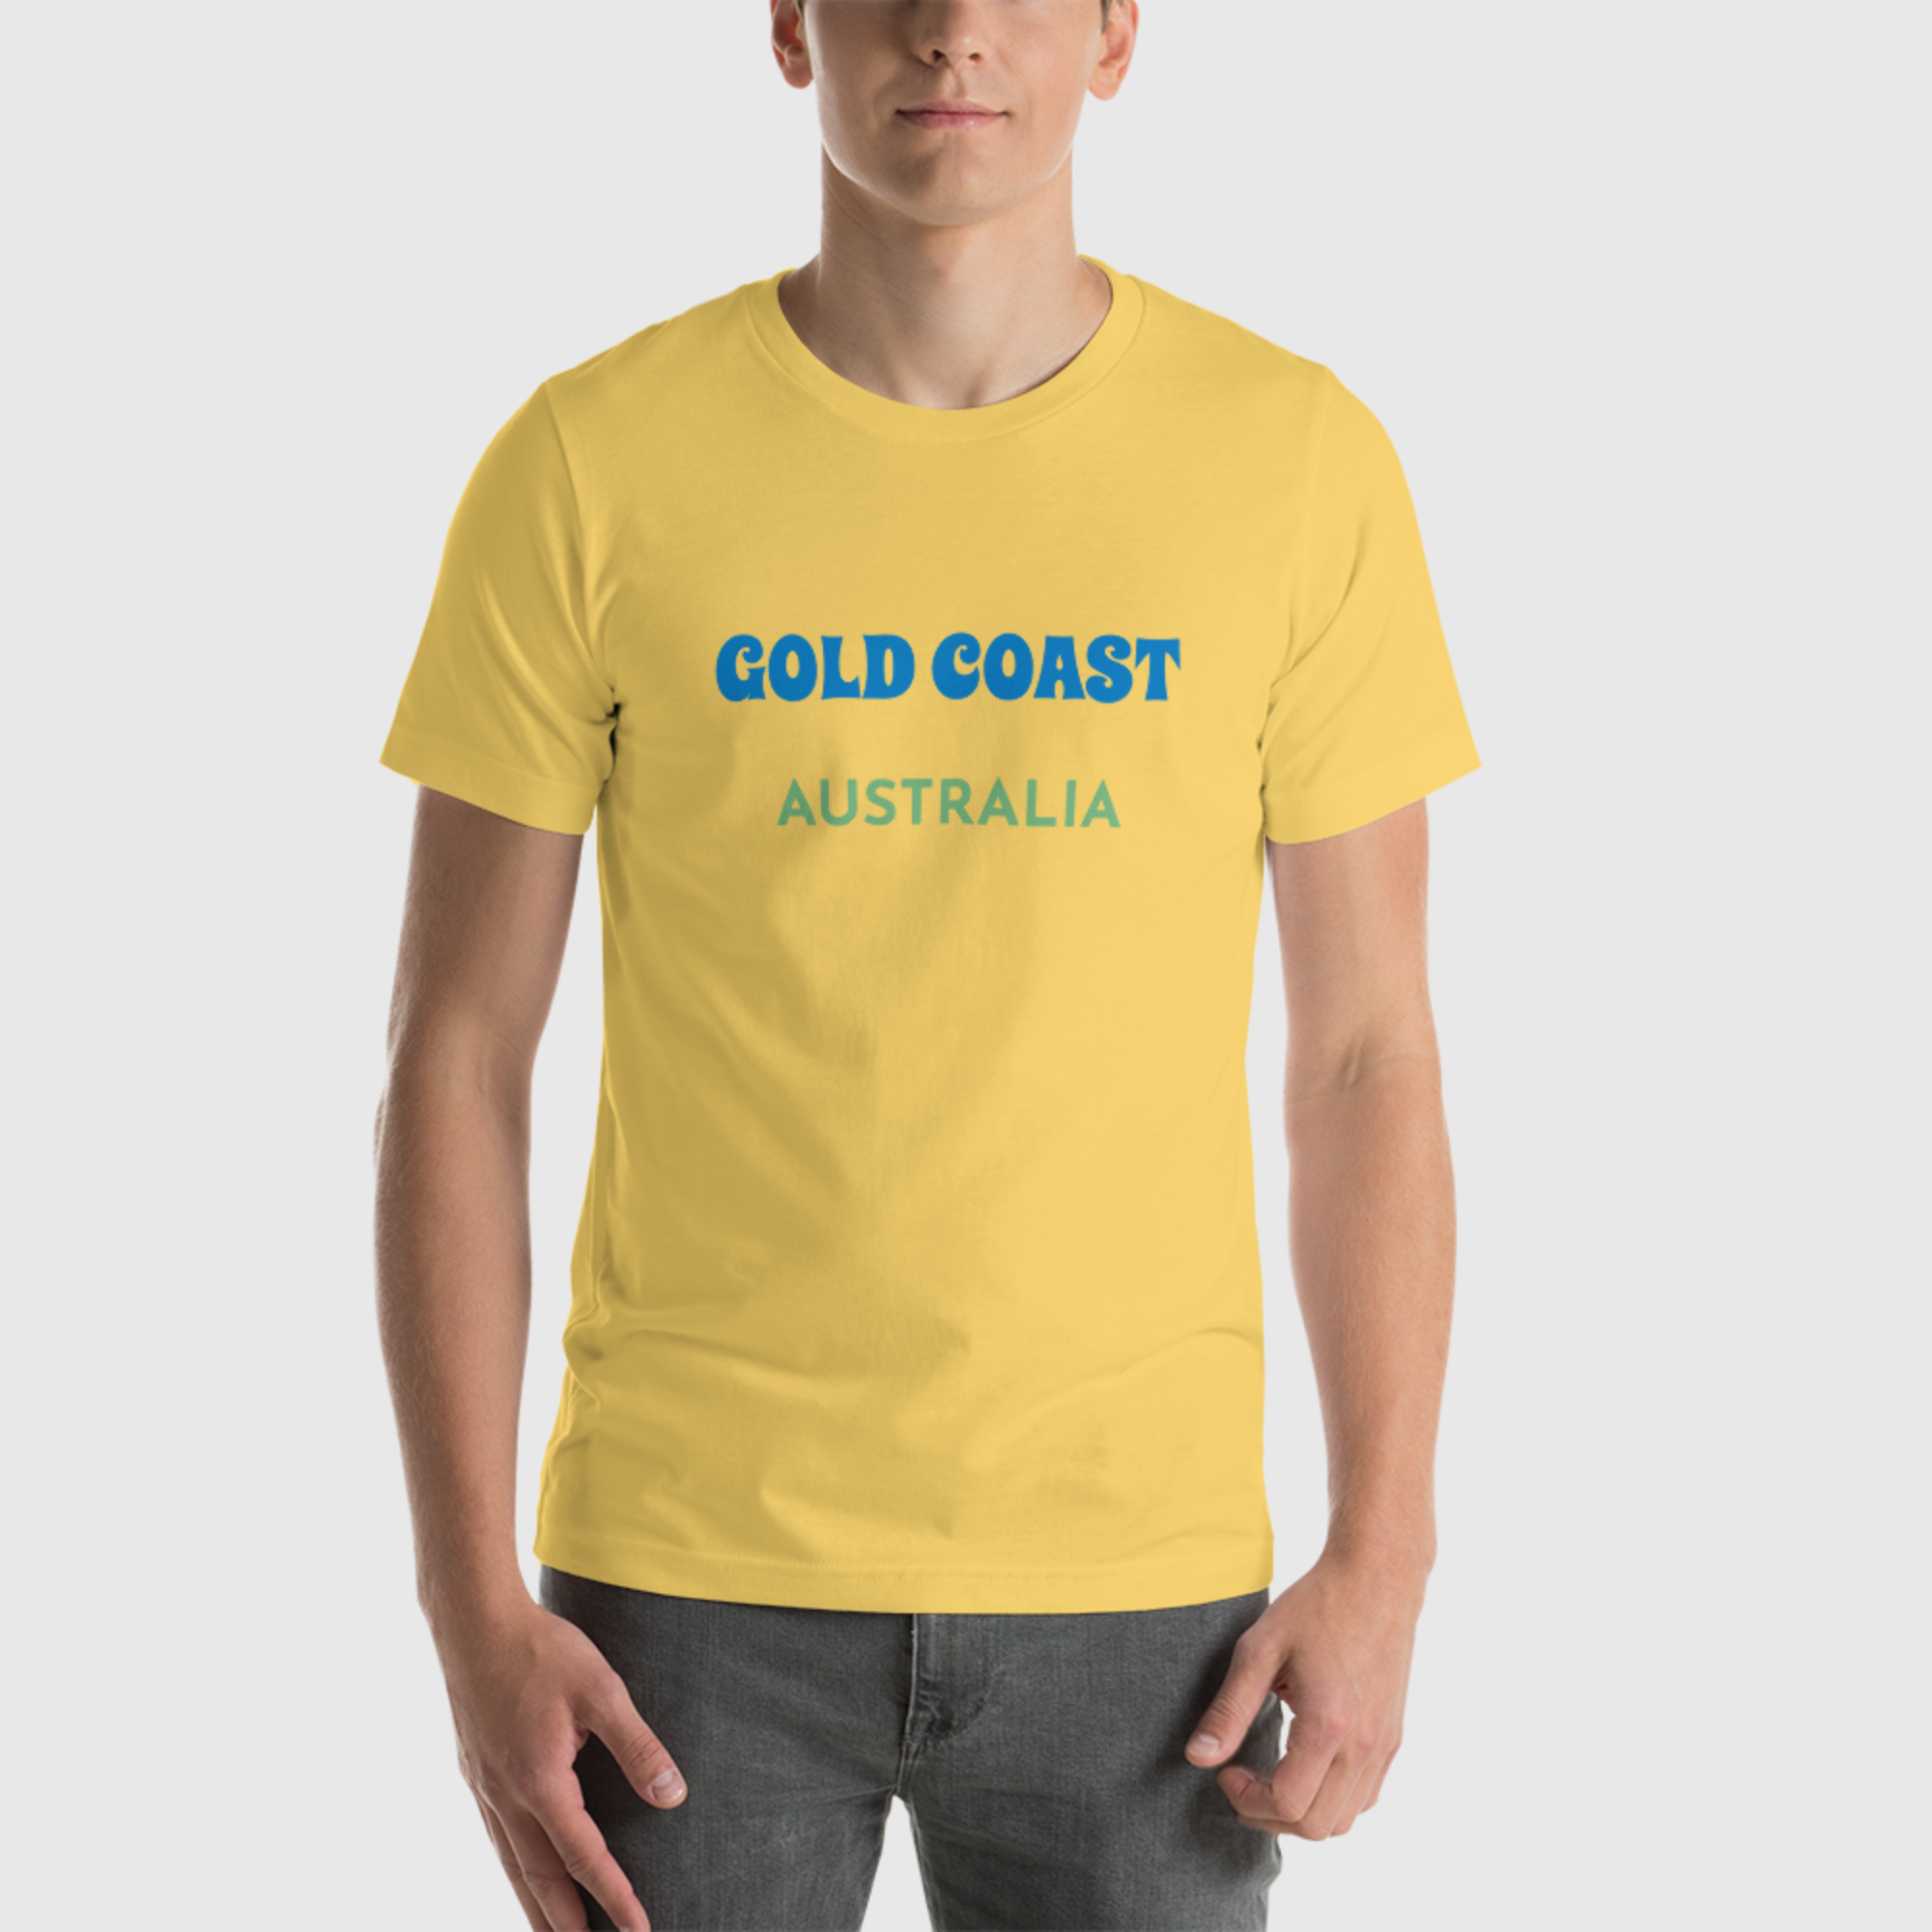 Camiseta unisex - Costa Dorada